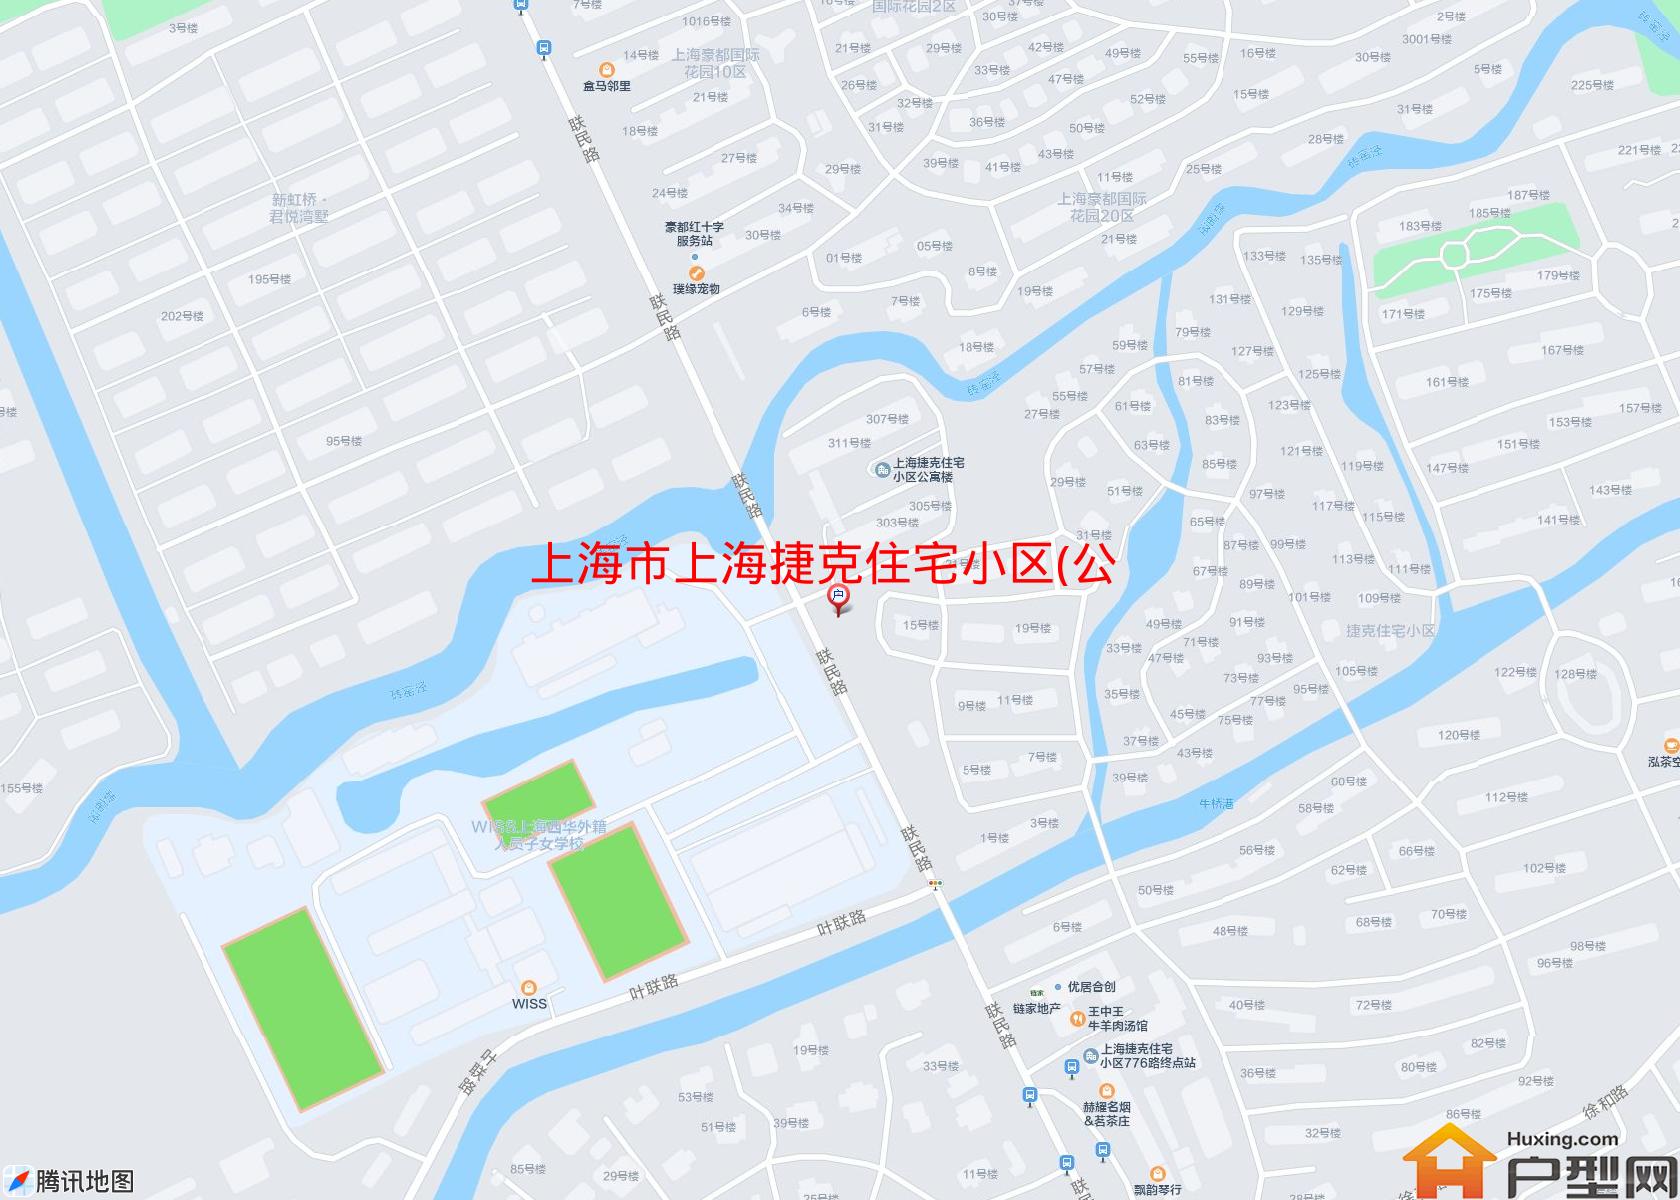 上海捷克住宅小区(公寓)小区 - 户型网